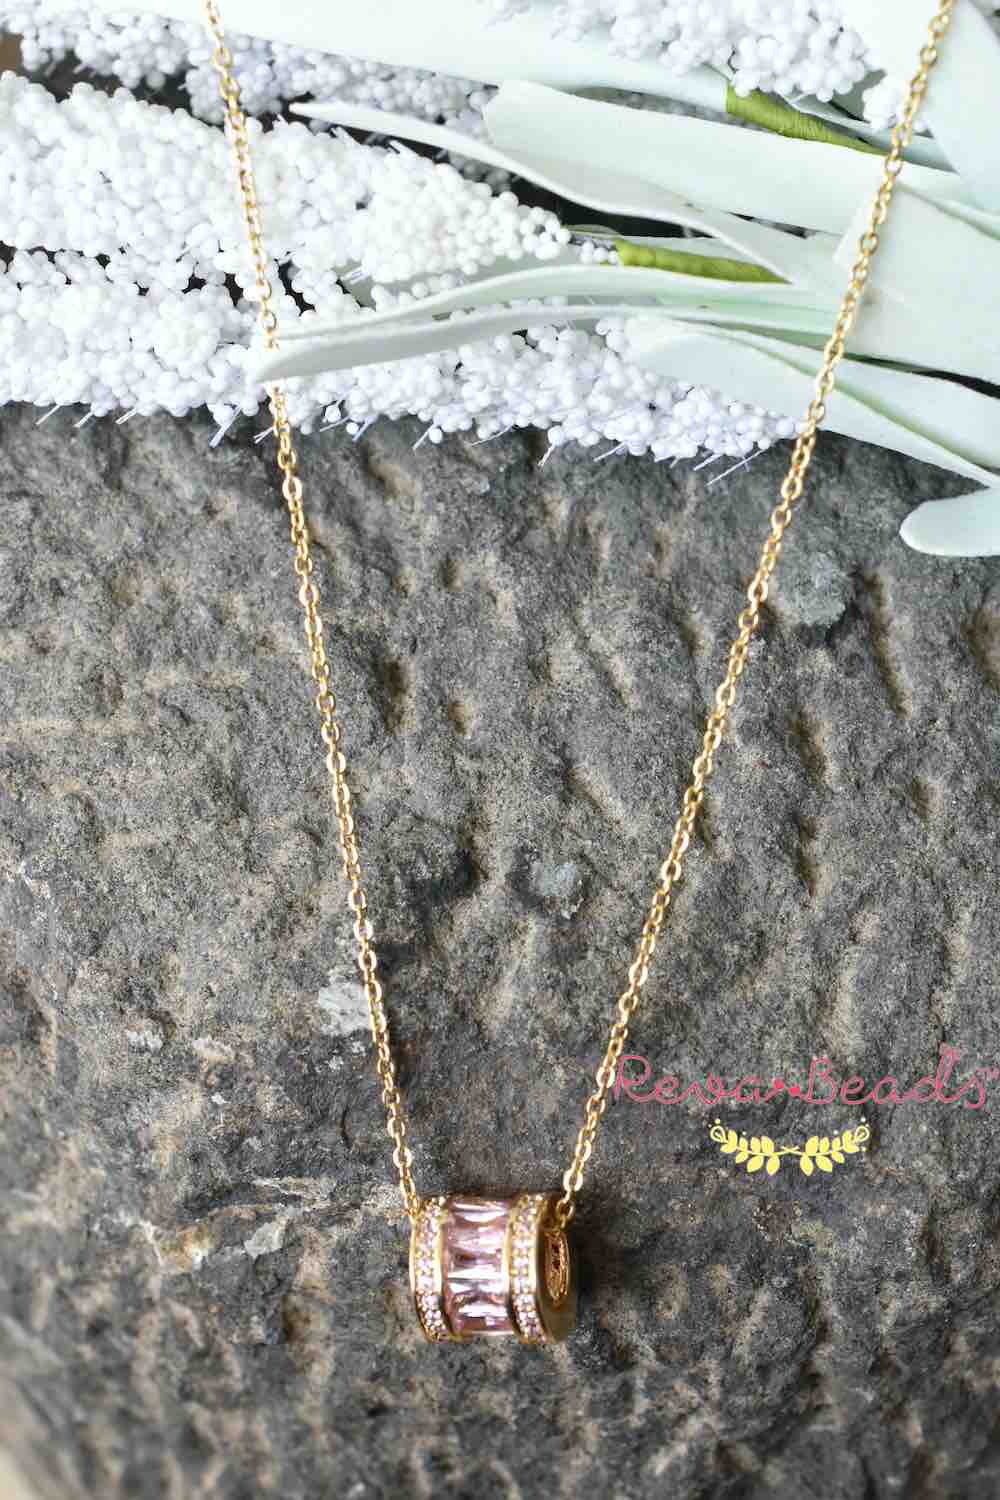 minimalist gold polish necklace 221000 – RevaBeads